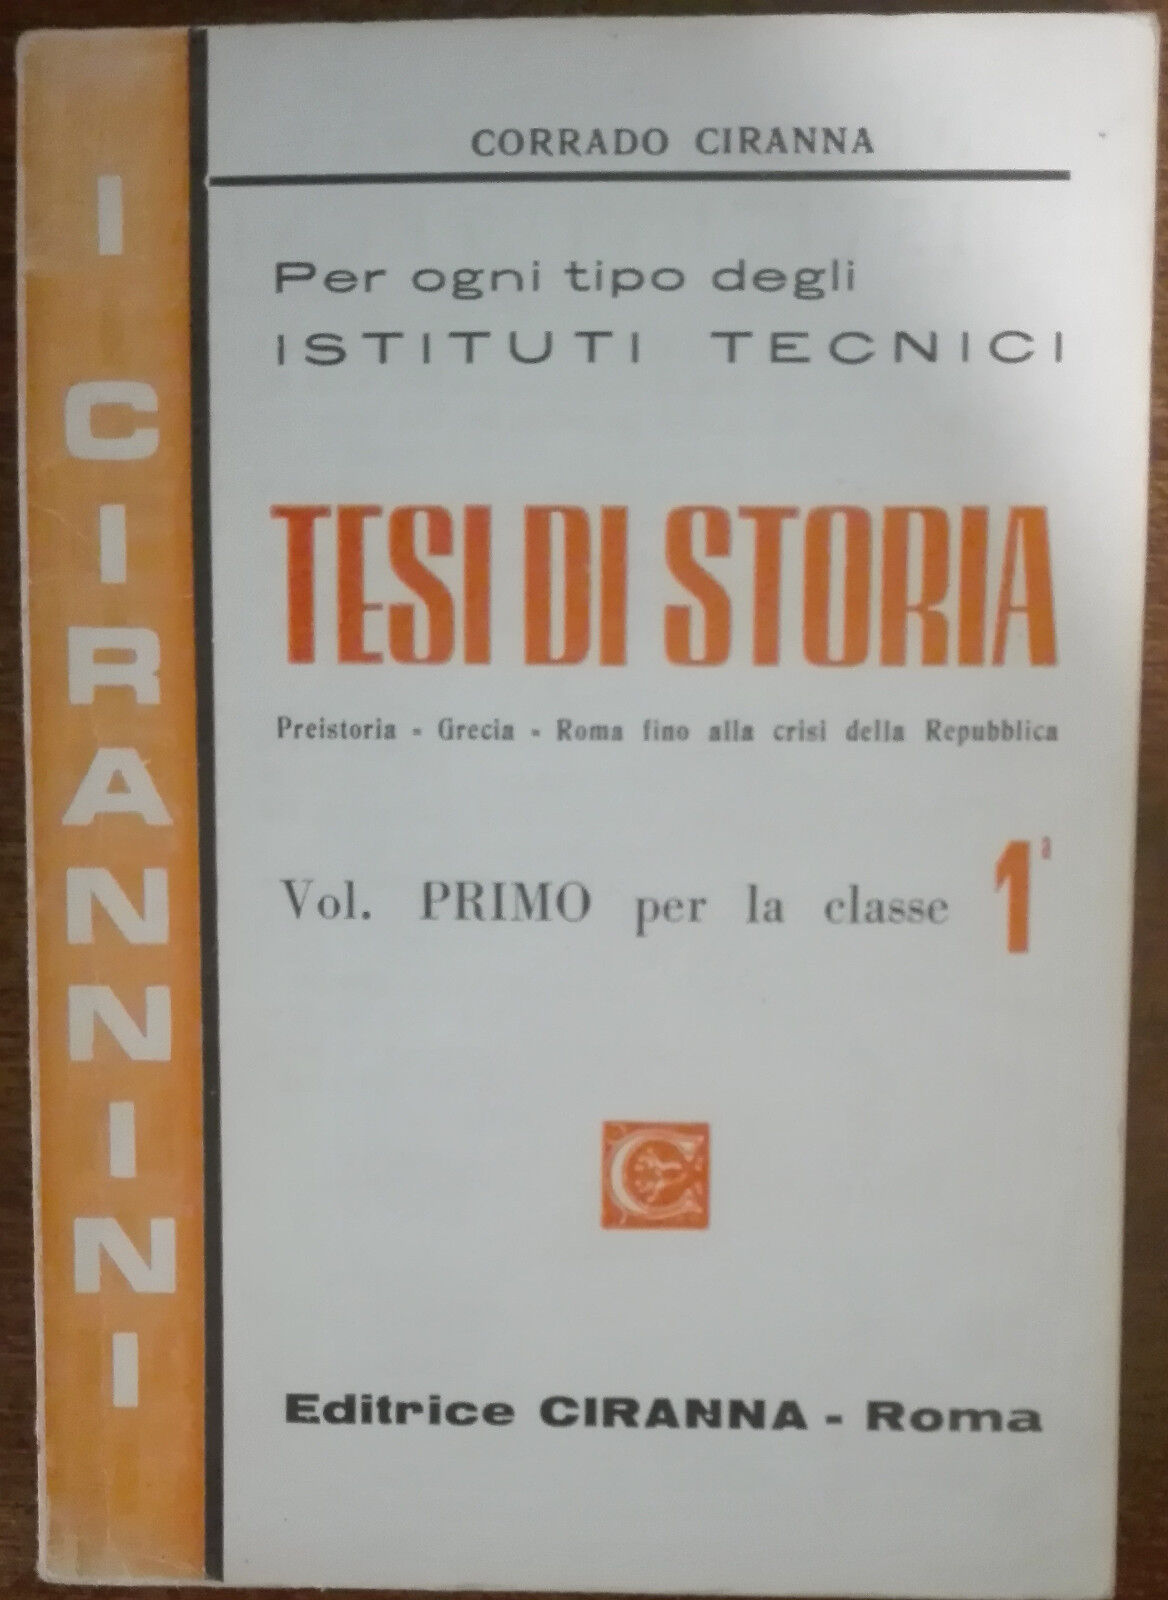 Tesi di storia - Corrado Ciranna - Editrice Ciranna,1968 - A